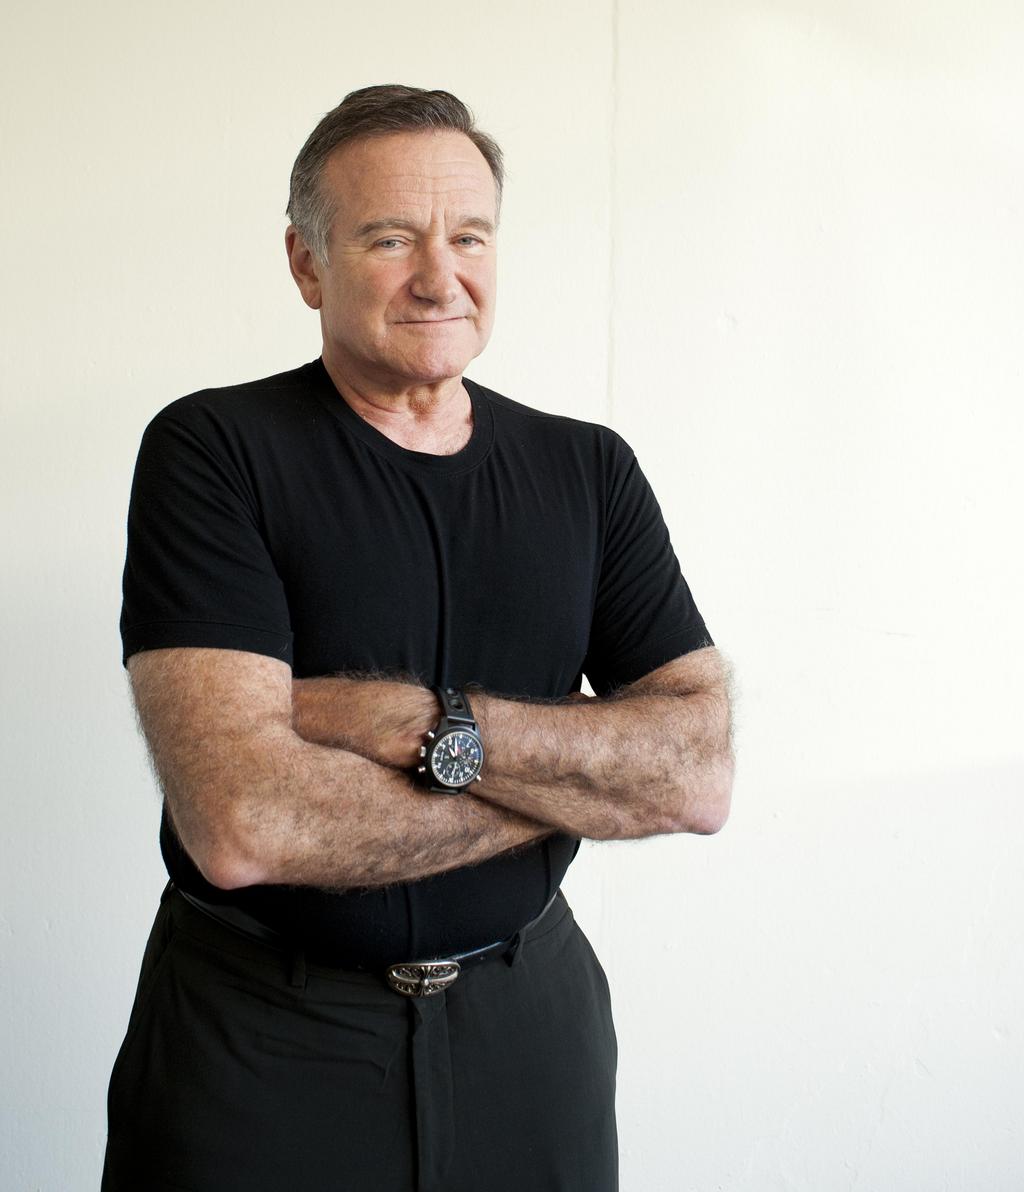 Decisión. Robin Williams no quiso que lucraran con su imagen, lo cual detalló en algunos puntos de su testamento.